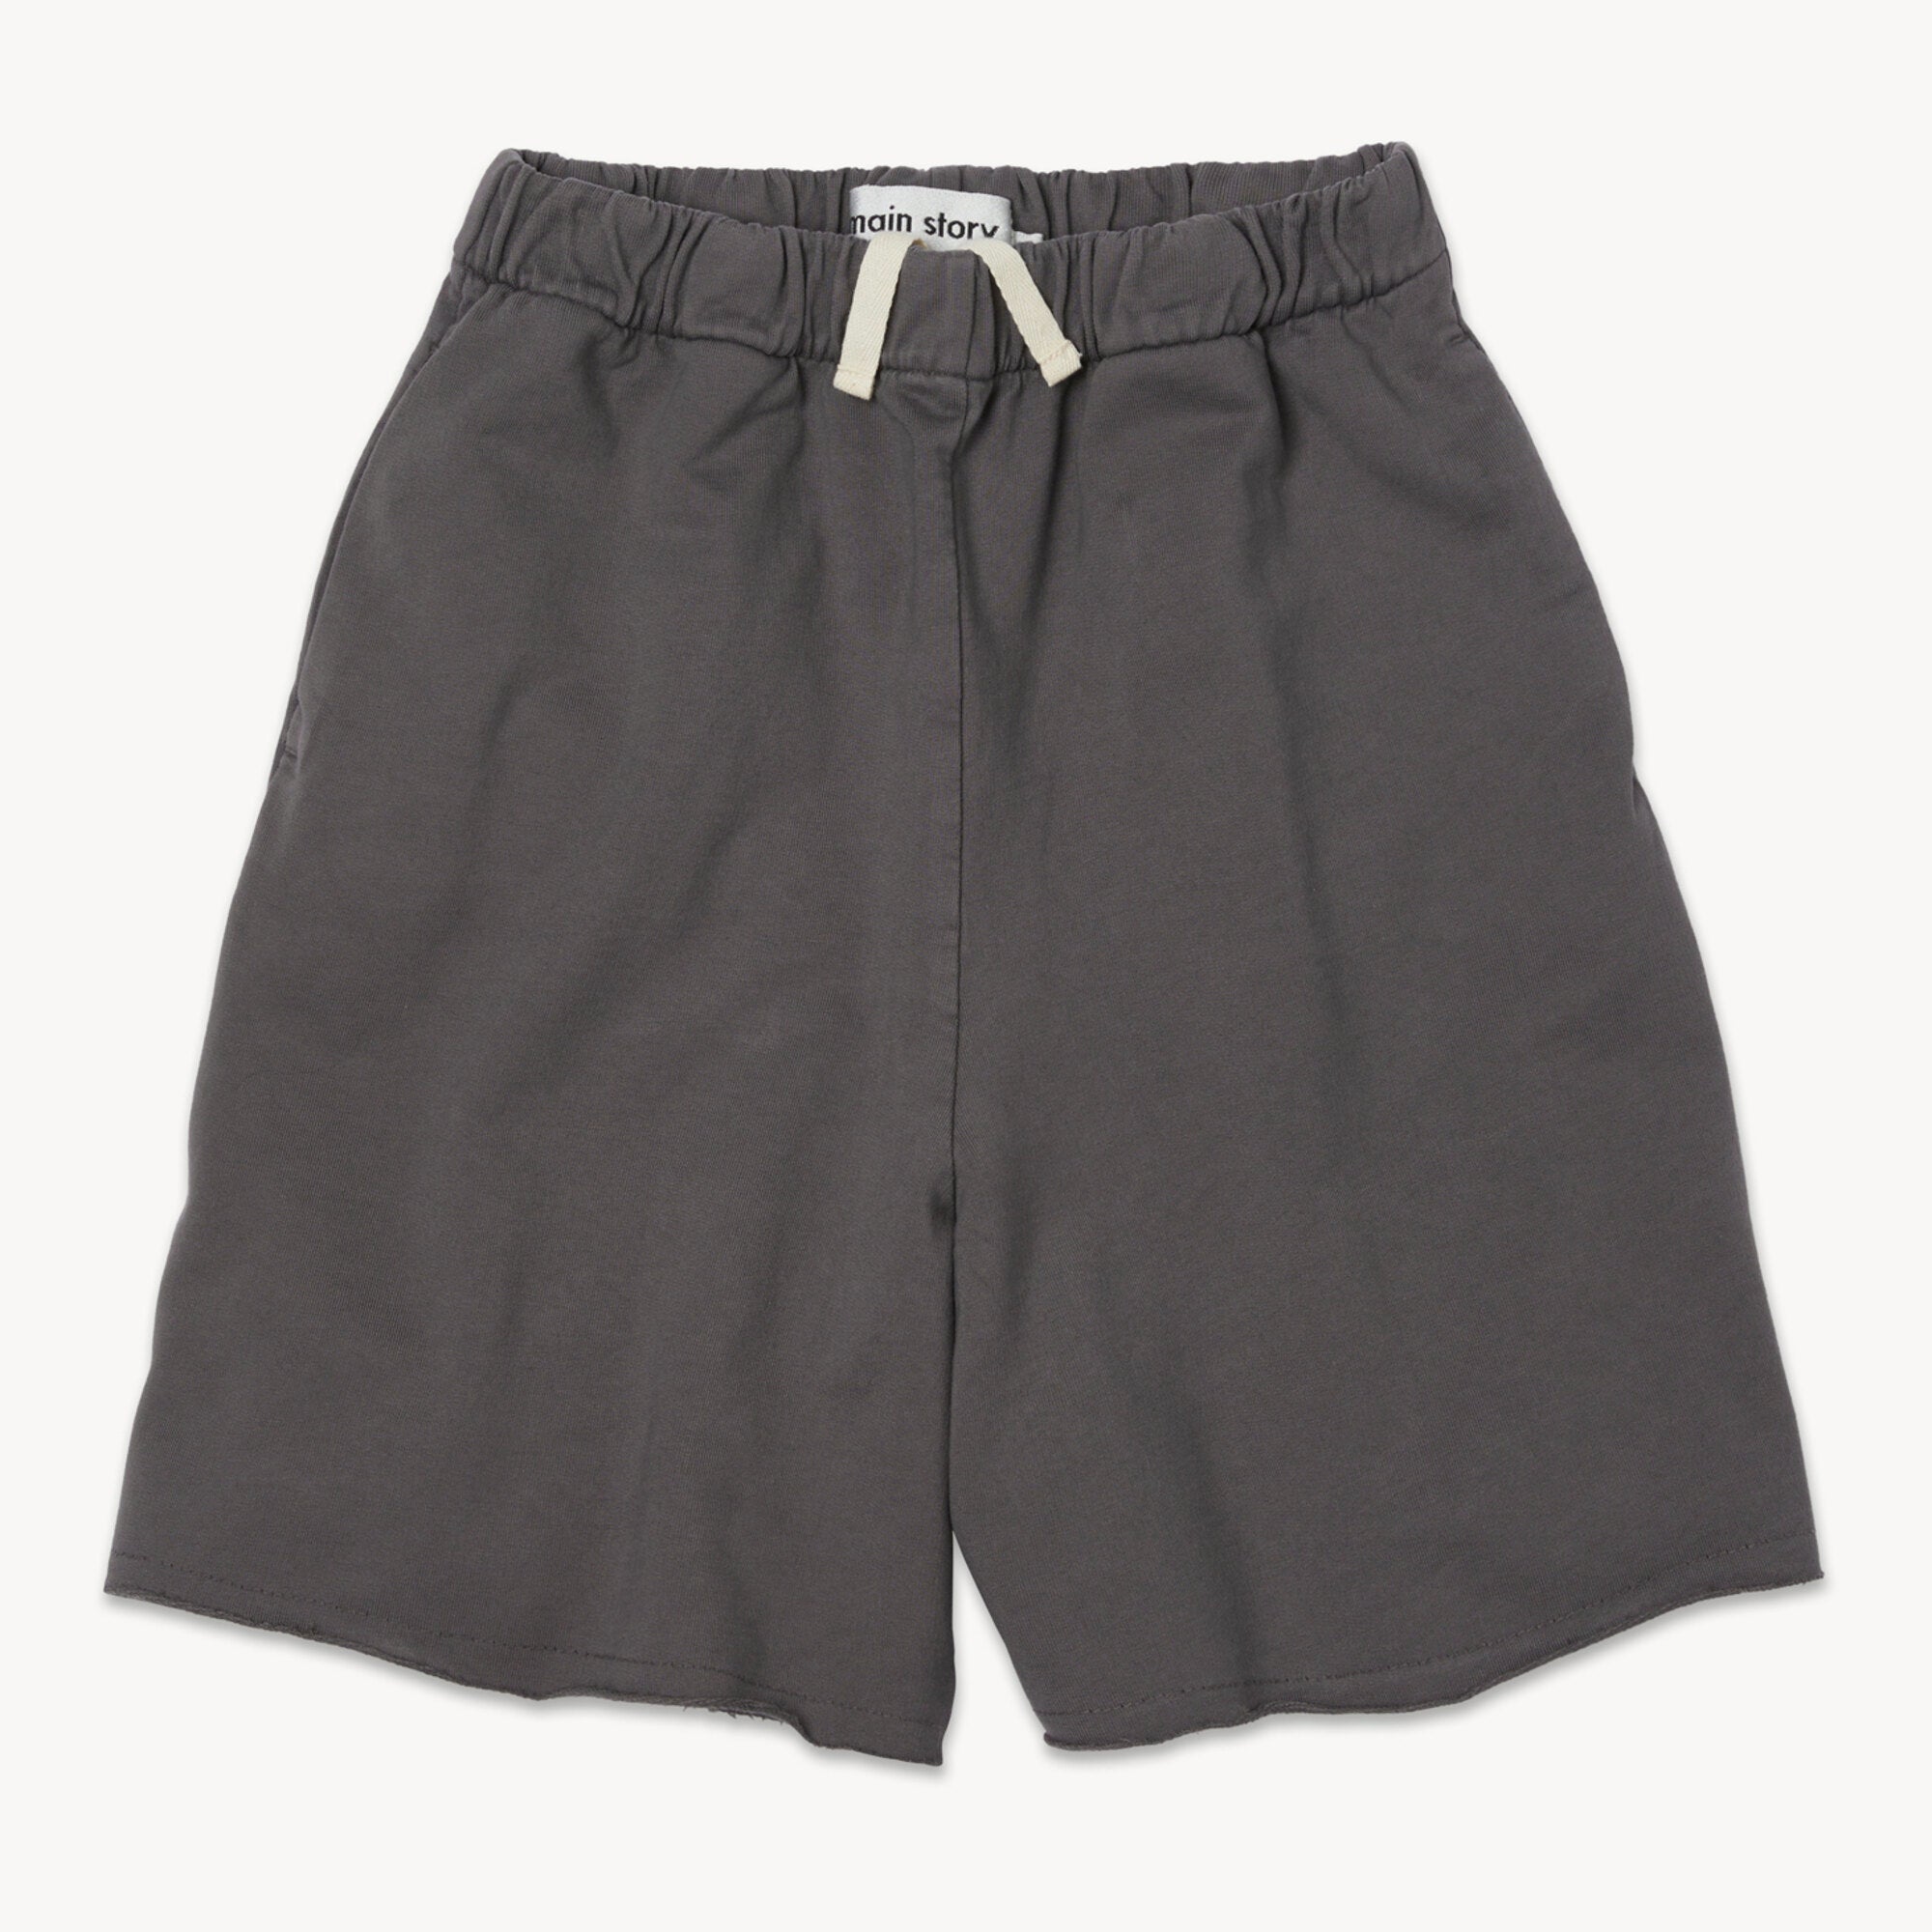 Boys & Girls Dark Brown Cotton Shorts